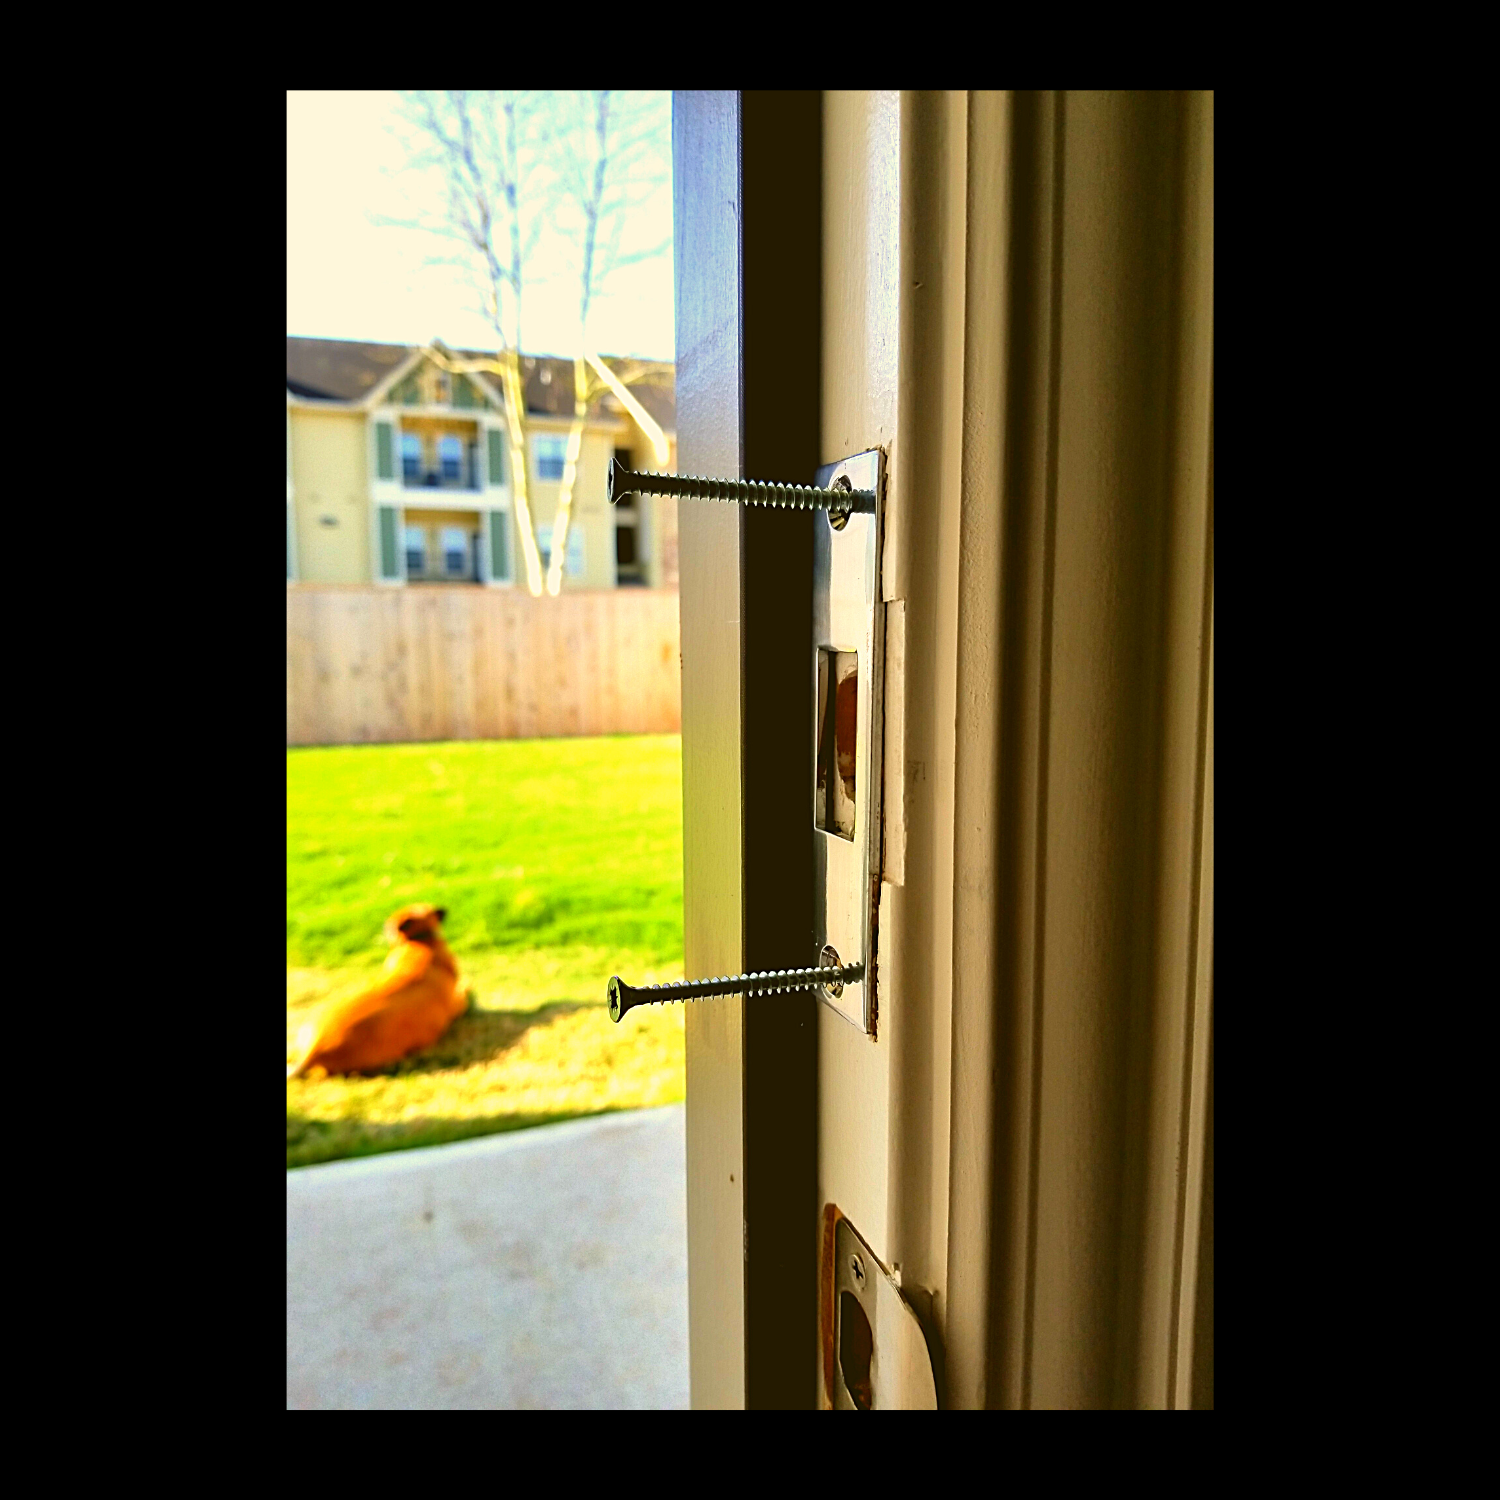 door reinforcement deadbolt reinforcer home security device kick proof door hardware burglary prevention security system